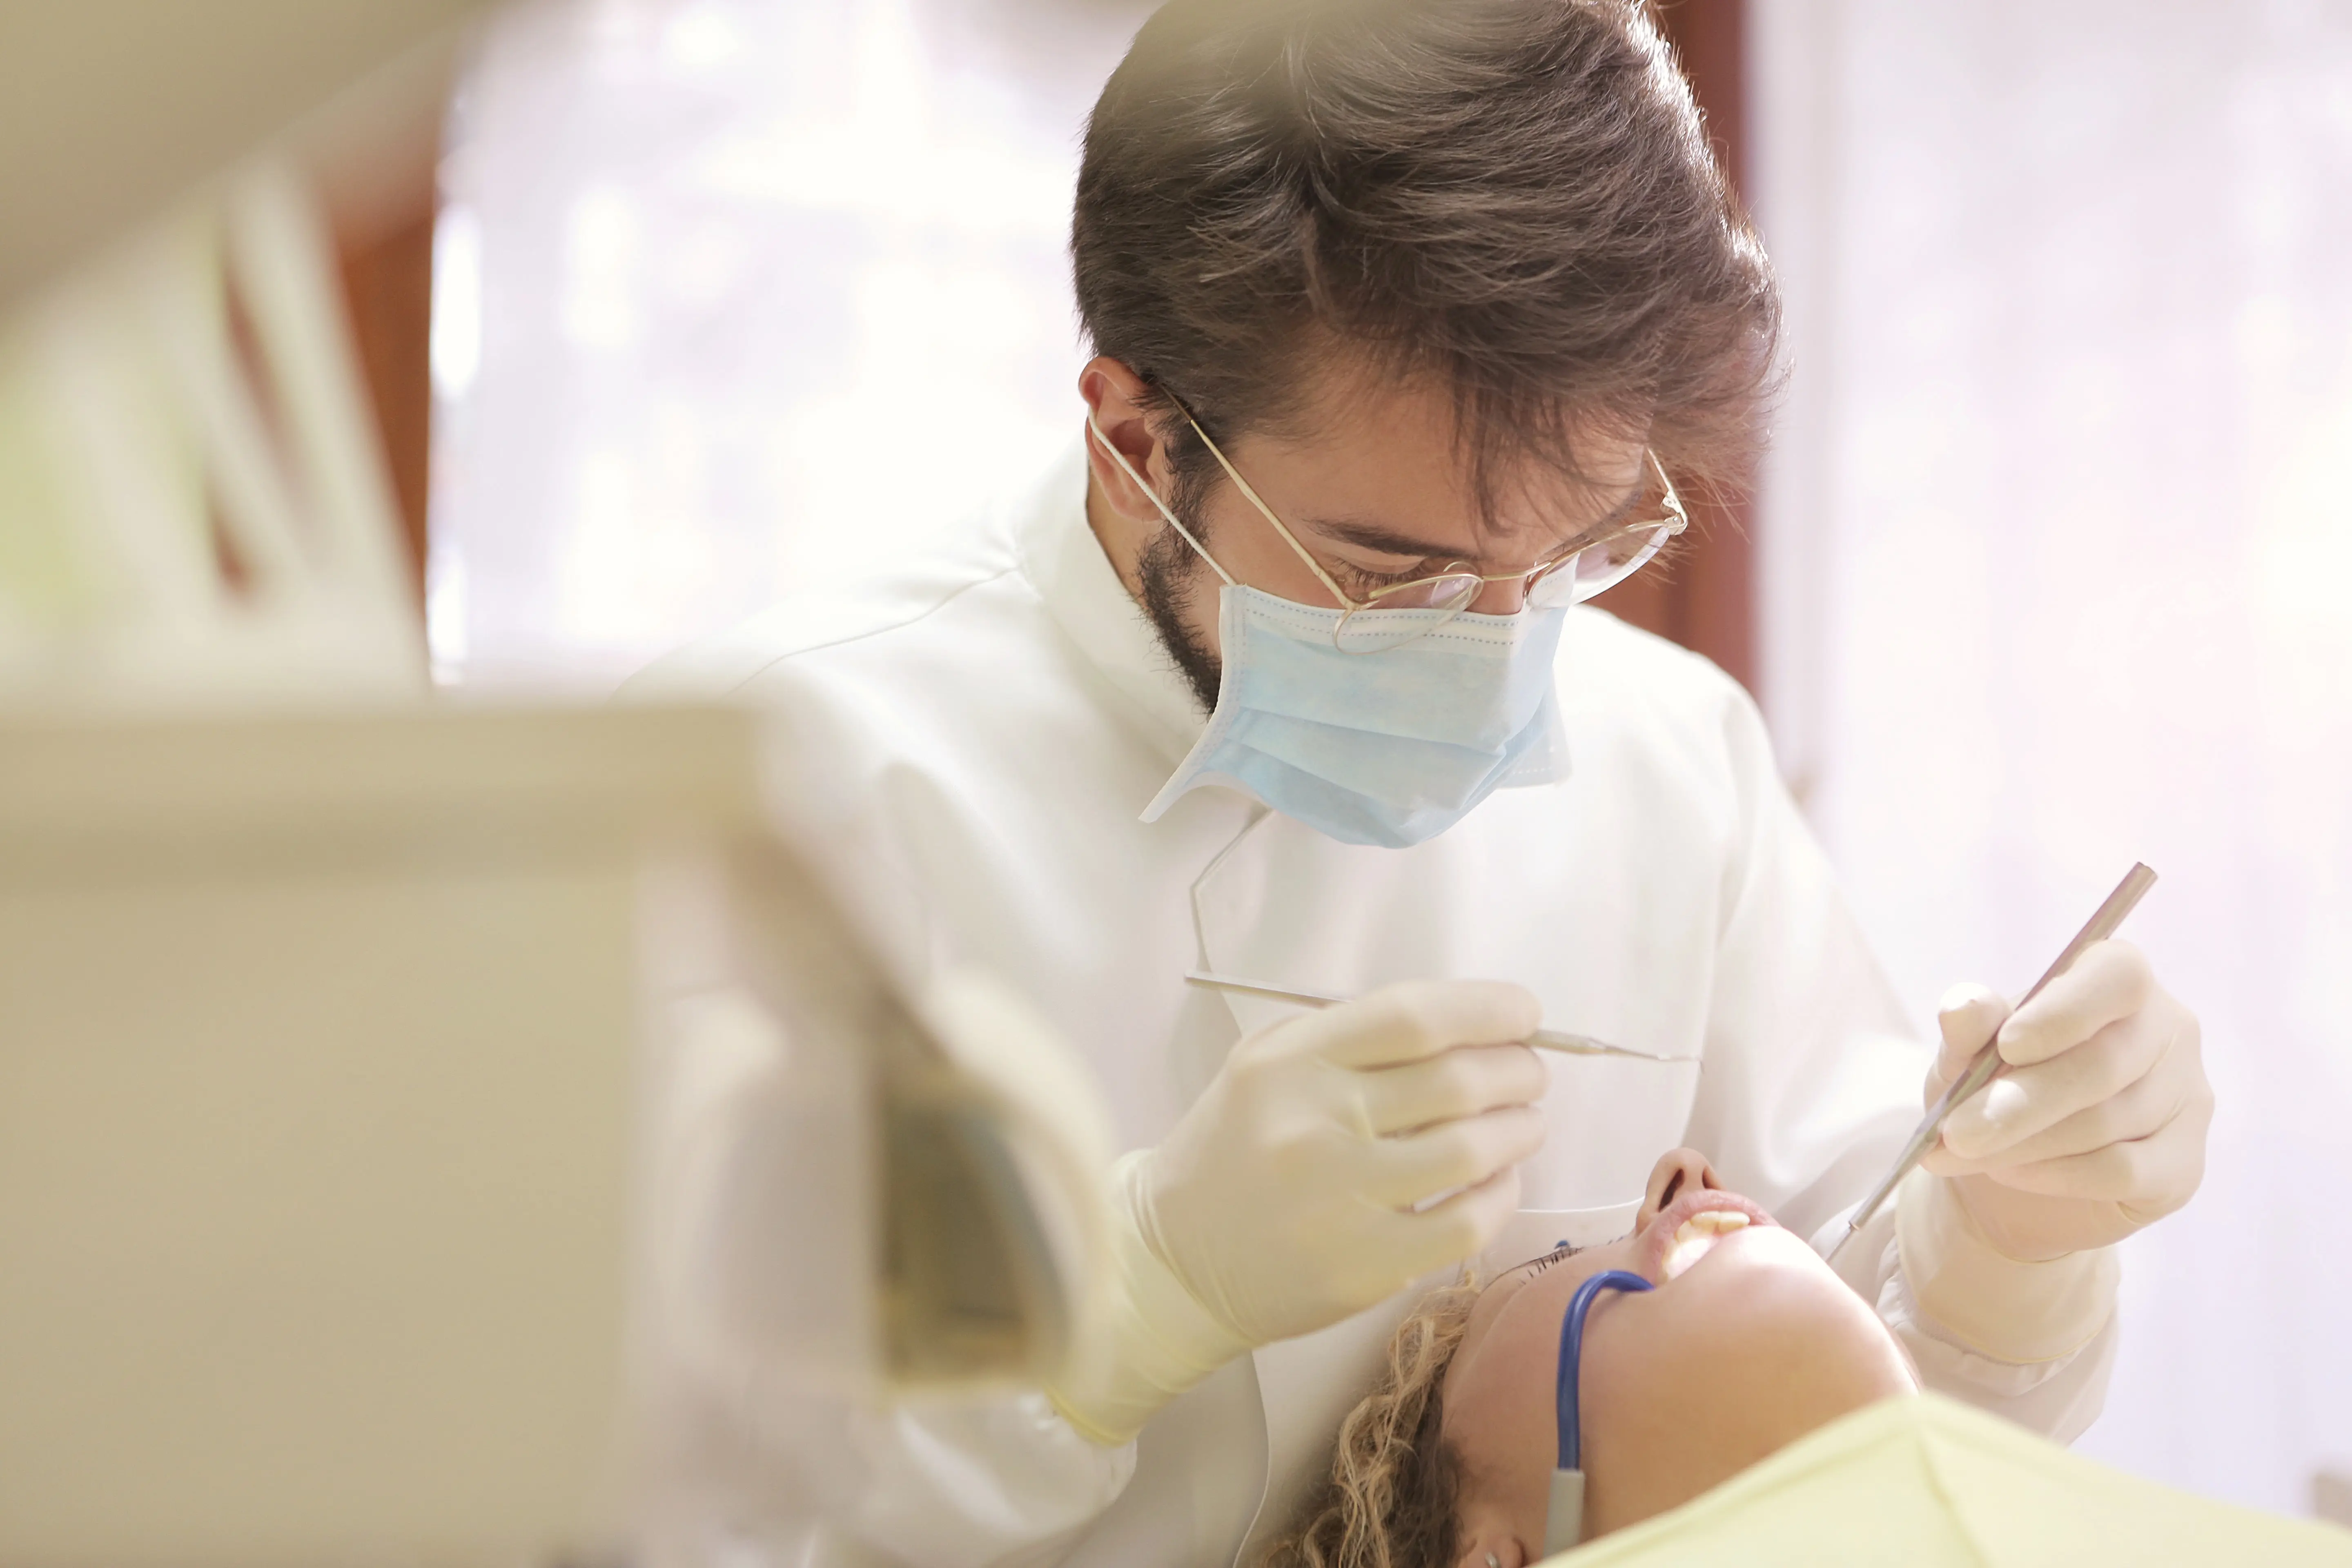 A dentist checks a client's mouth